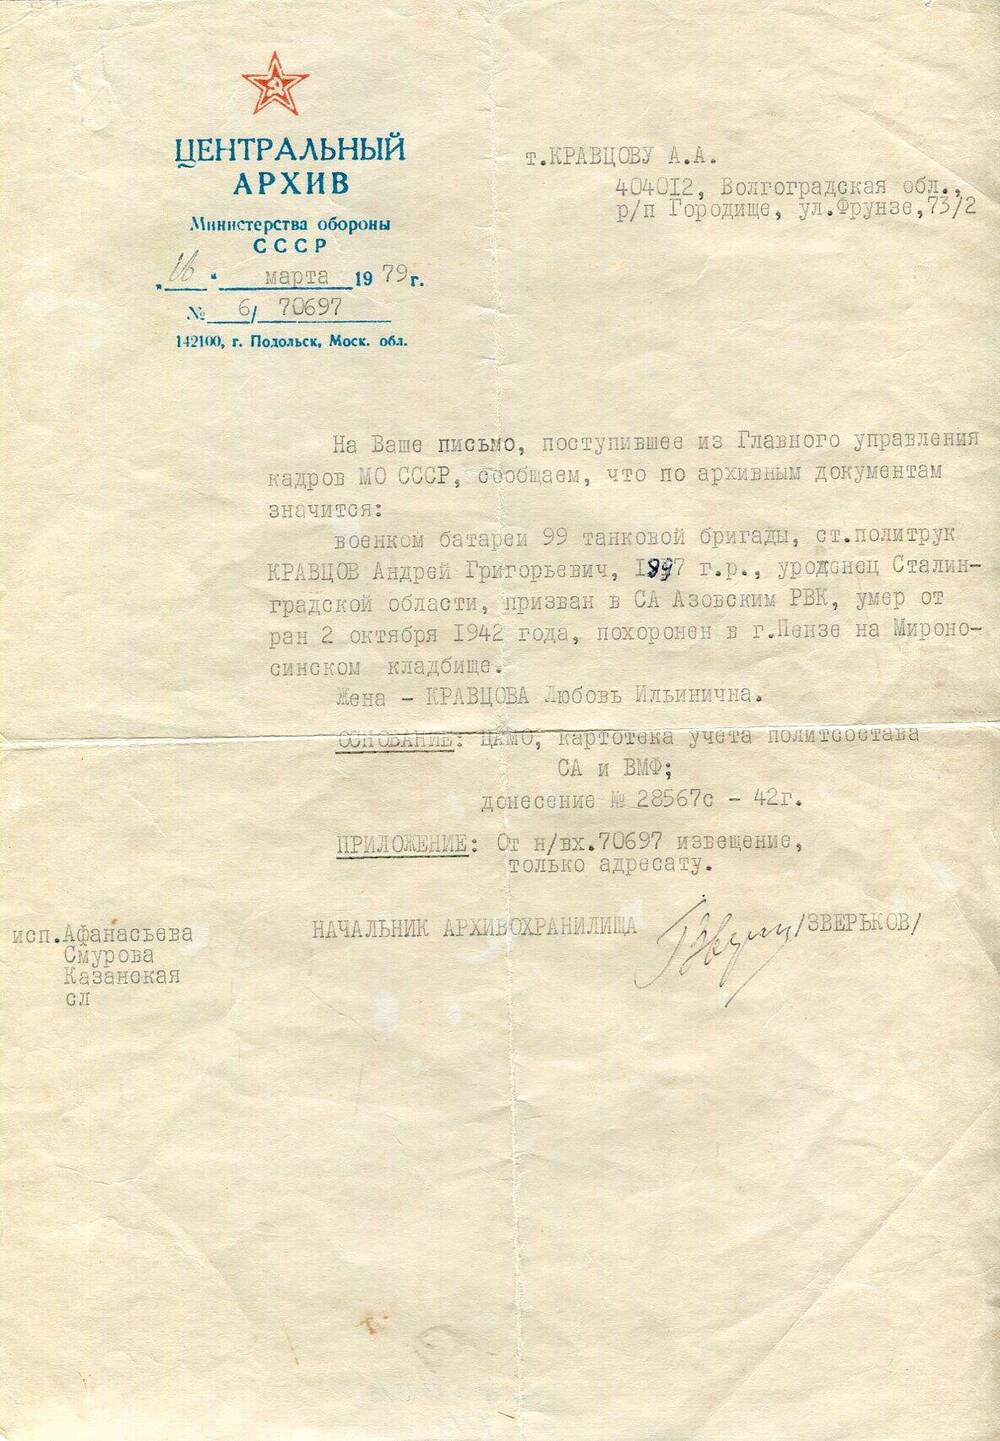 Письмо Центрального архива Министерства обороны СССР  Кравцову А.А., от 16 марта  1979 г.